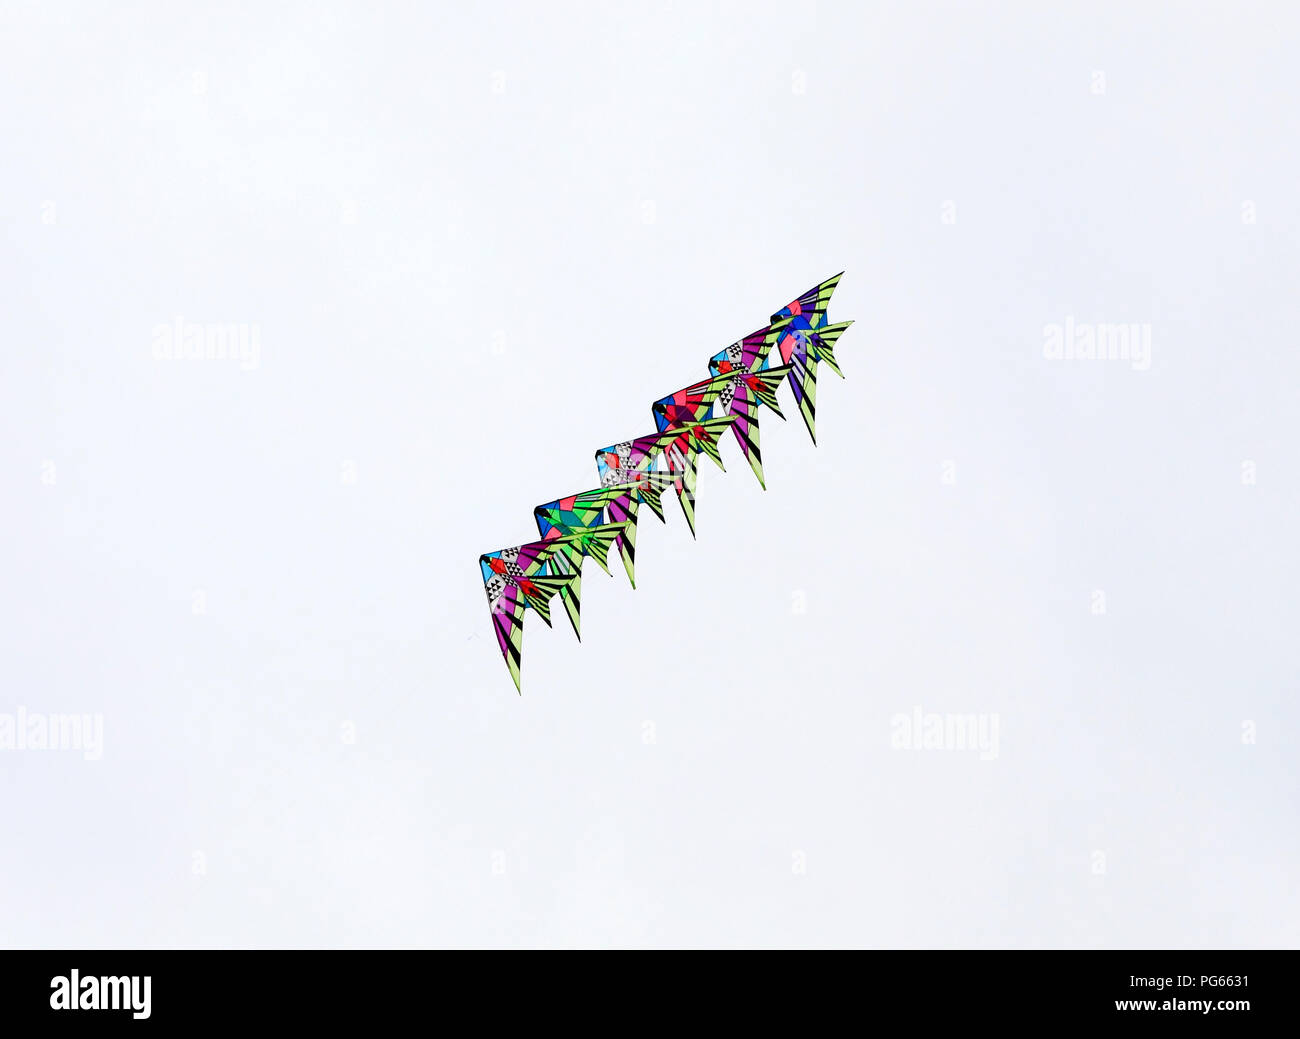 Drachen, fliegende, Bildung, Display, mit mehreren Farben, Farben, Farben, Himmel, Vögel Stockfoto